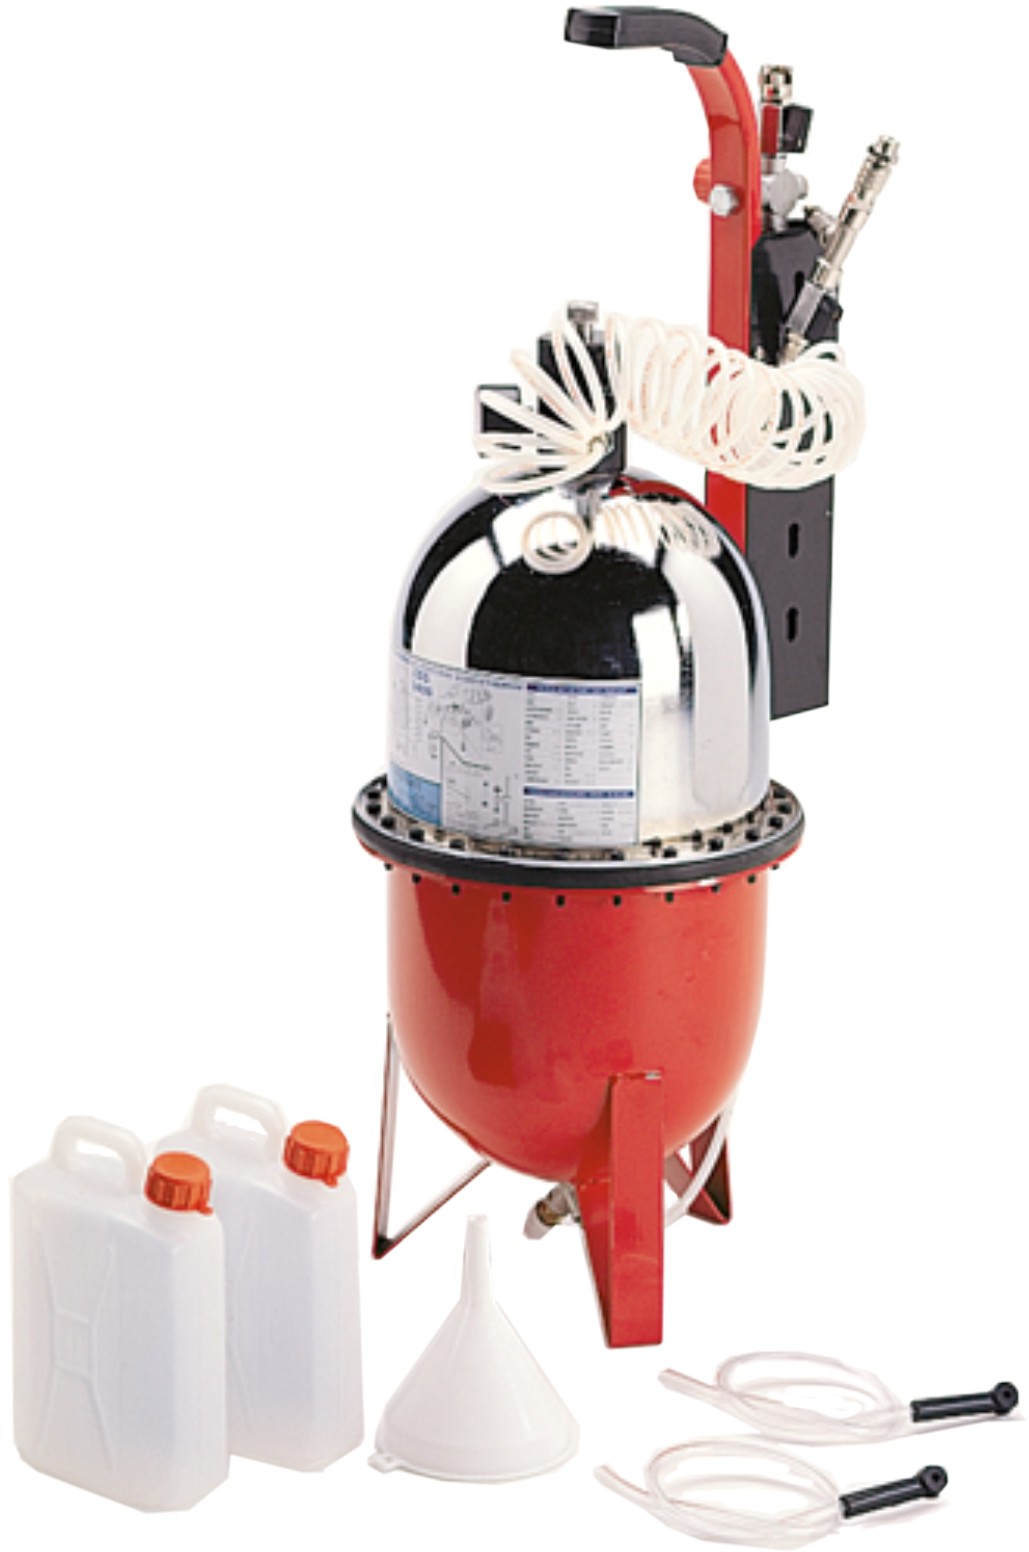 Пневматический прибор для прокачки тормозной жидкости Flexbimex, арт.3406.